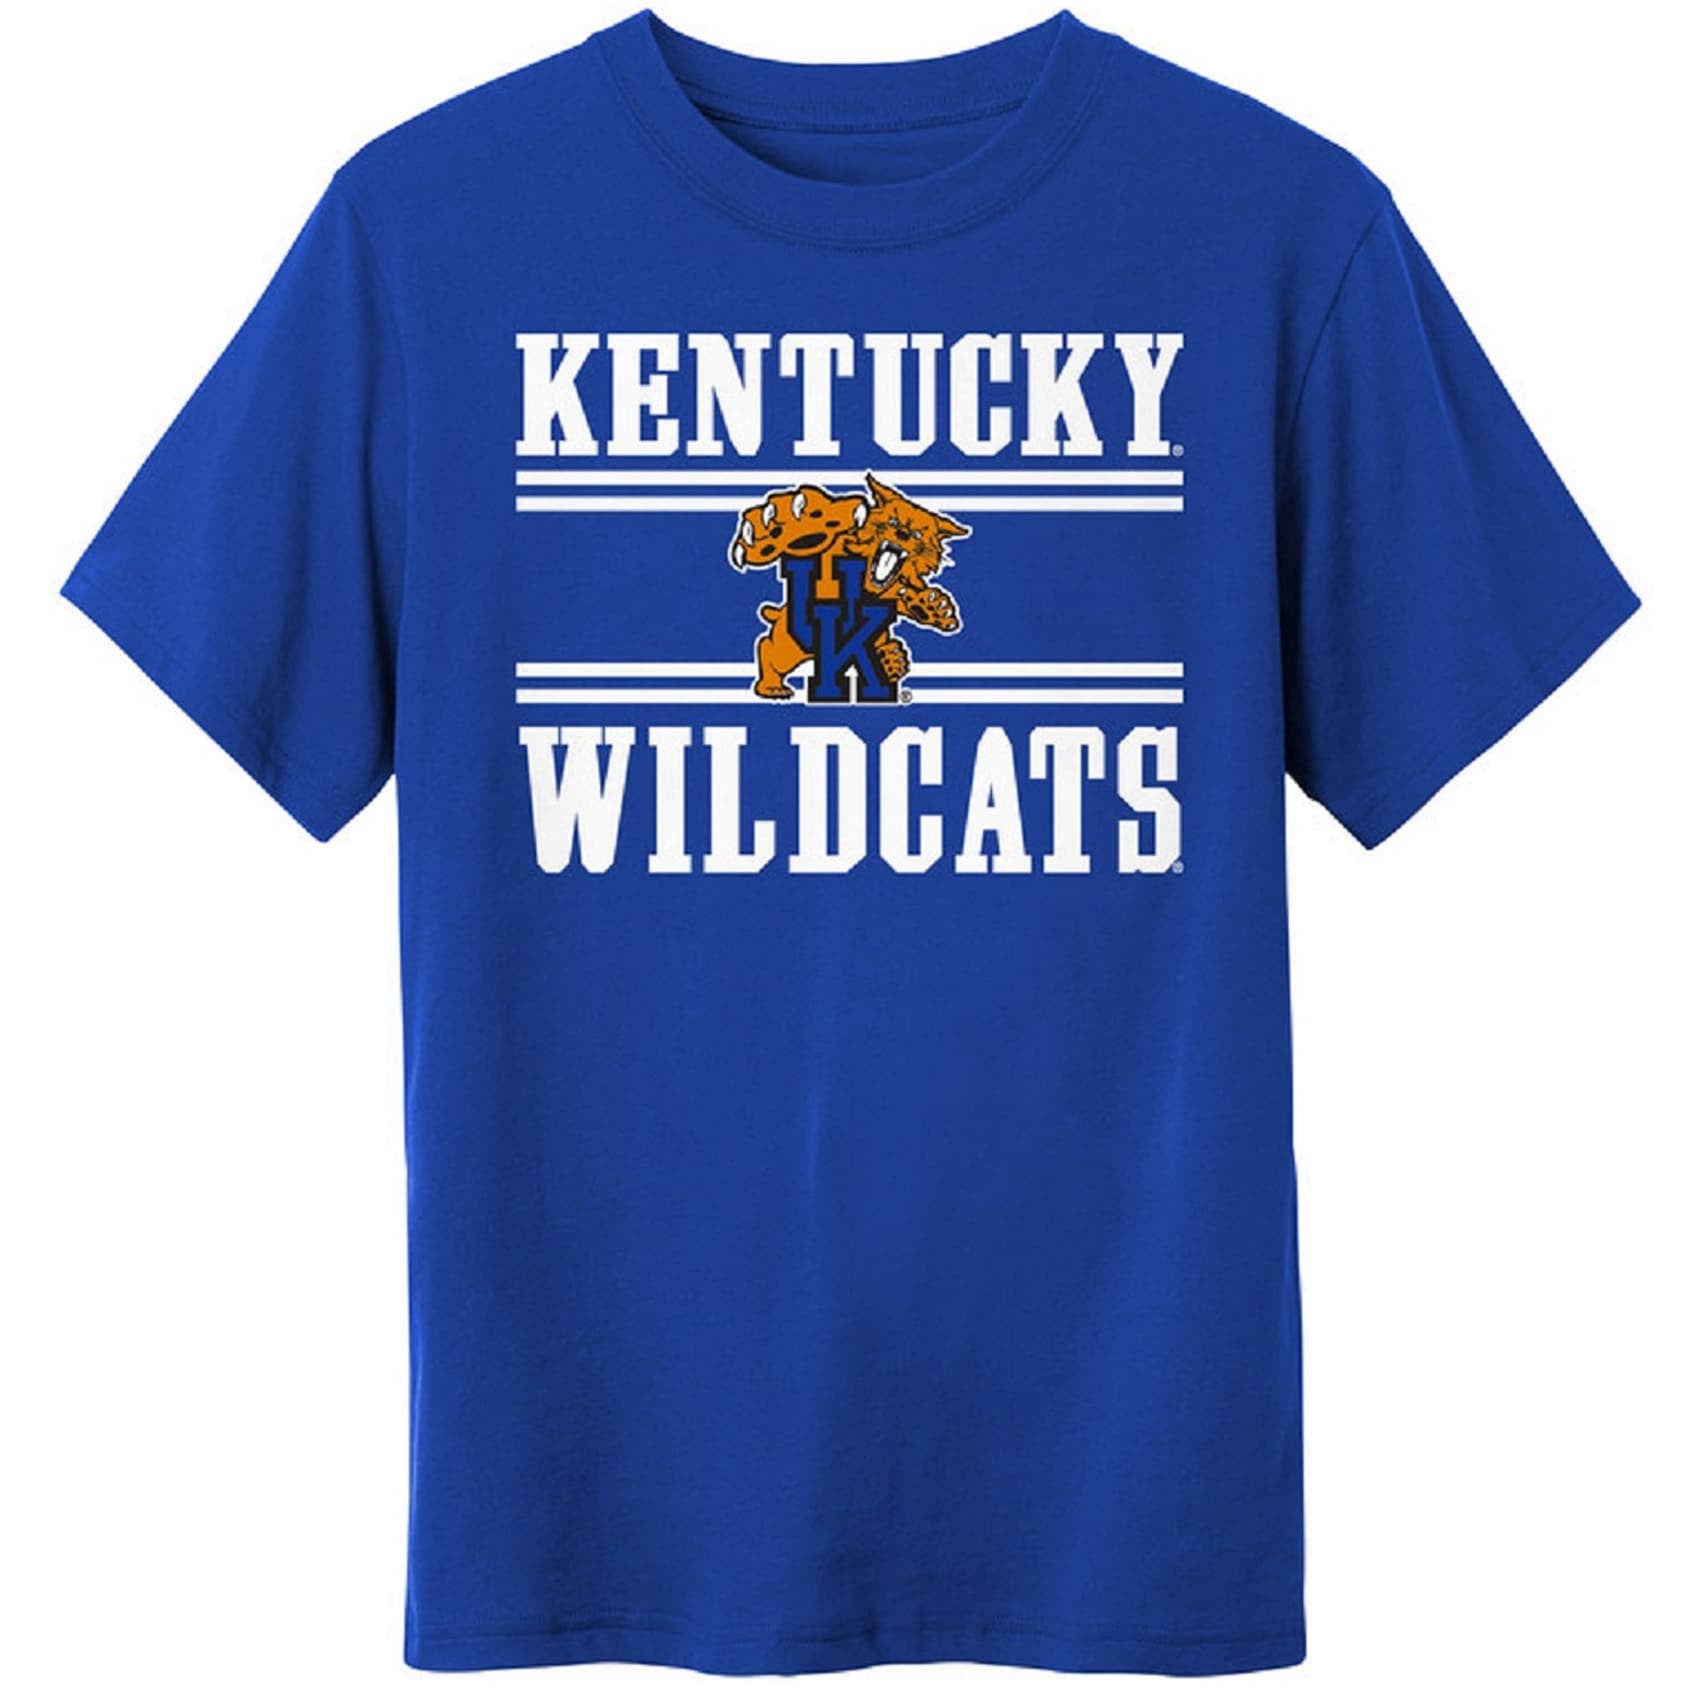 Details about   Kentucky Wildcats Youth XL Jersey Baseball Shirt Boys Dri-fit. 15 